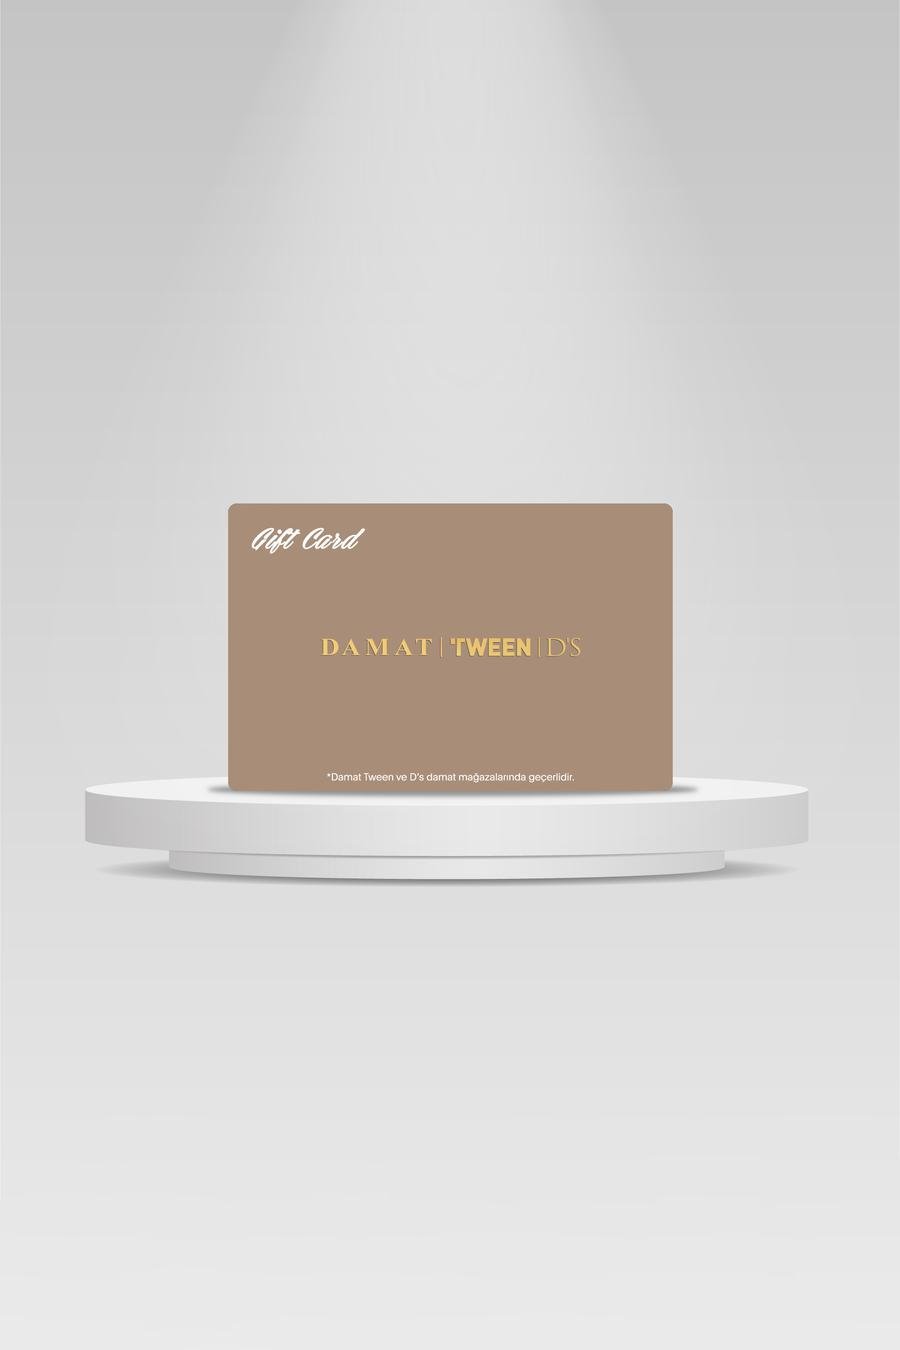 500 TL Ds Damat Standart Gift Card - 8683578012471 | D'S Damat